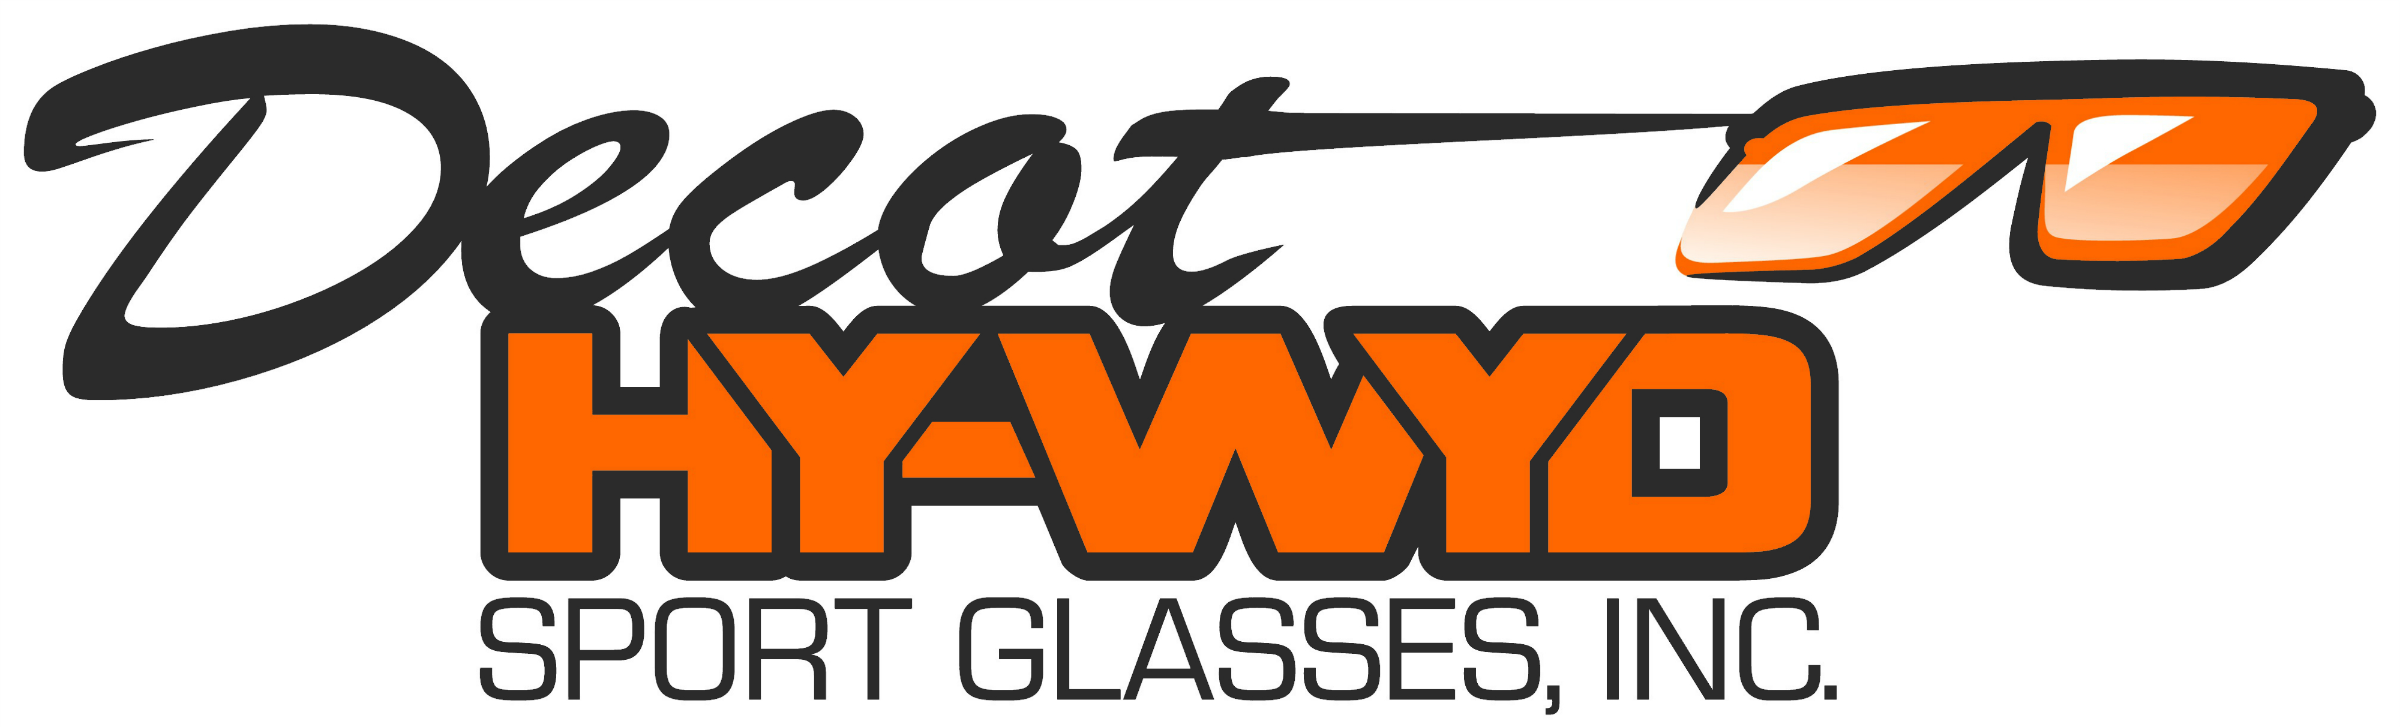 Decot Hy-Wyd Sport Glasses, Inc.